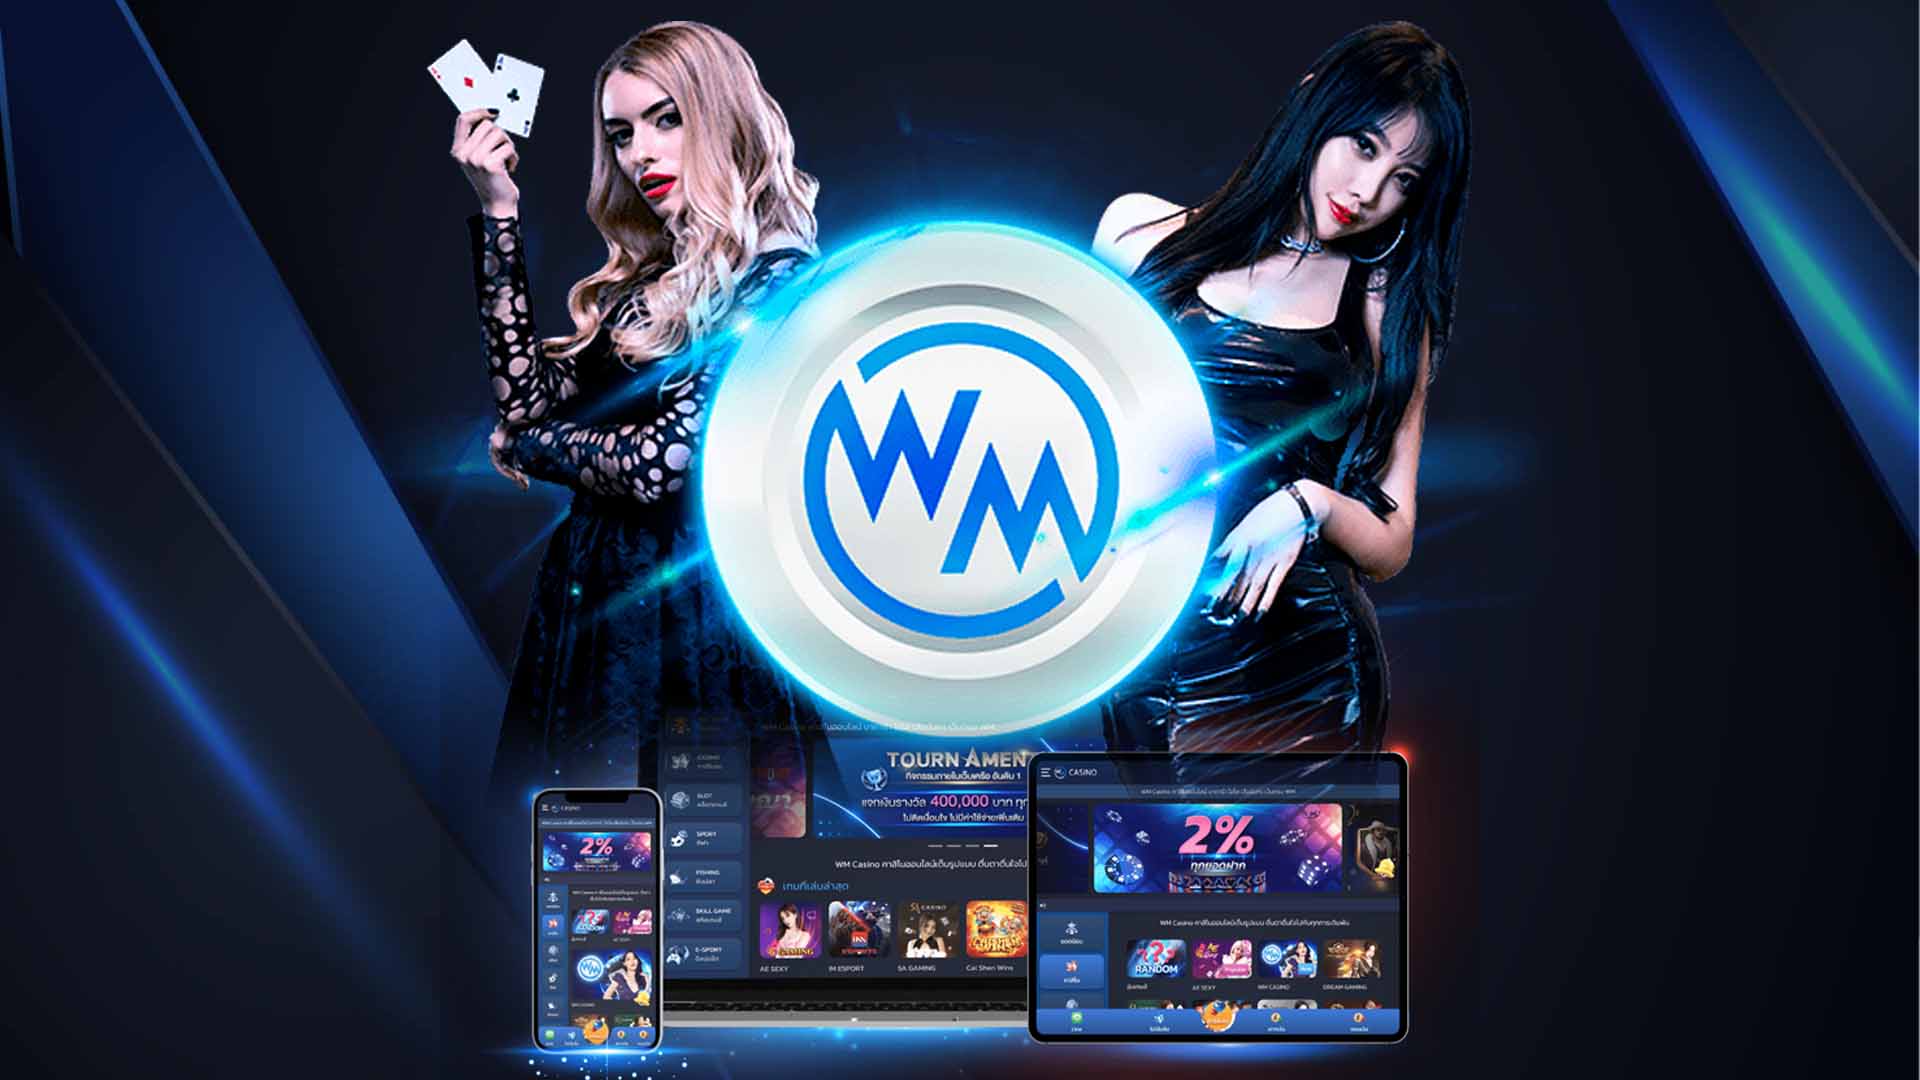 wm-casino